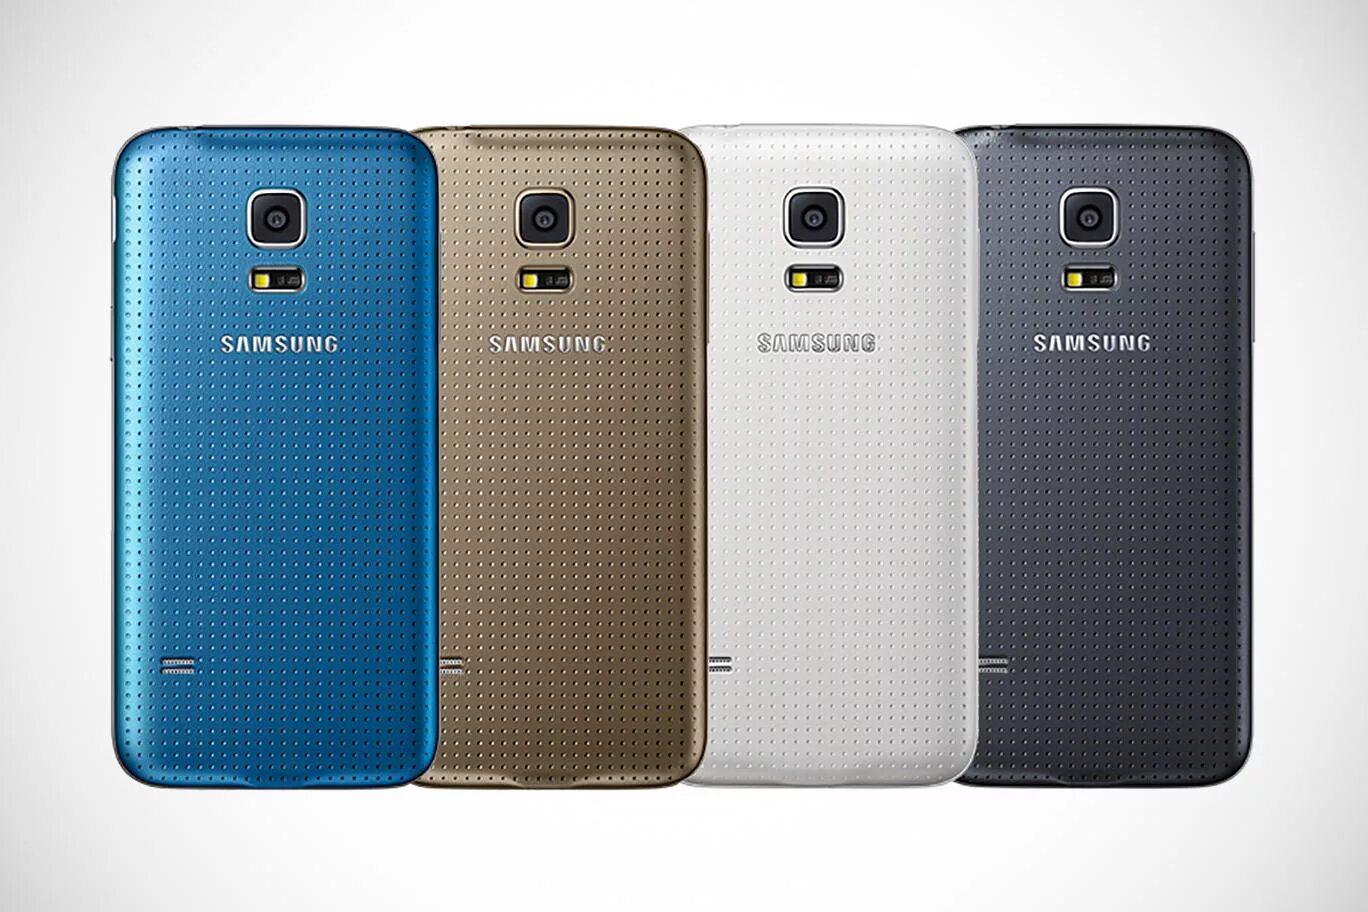 Samsung Galaxy s5 Mini. Samsung Galaxy s5 Mini Duos. Samsung s5 Mini Duos. Samsung Galaxy s5 4g.